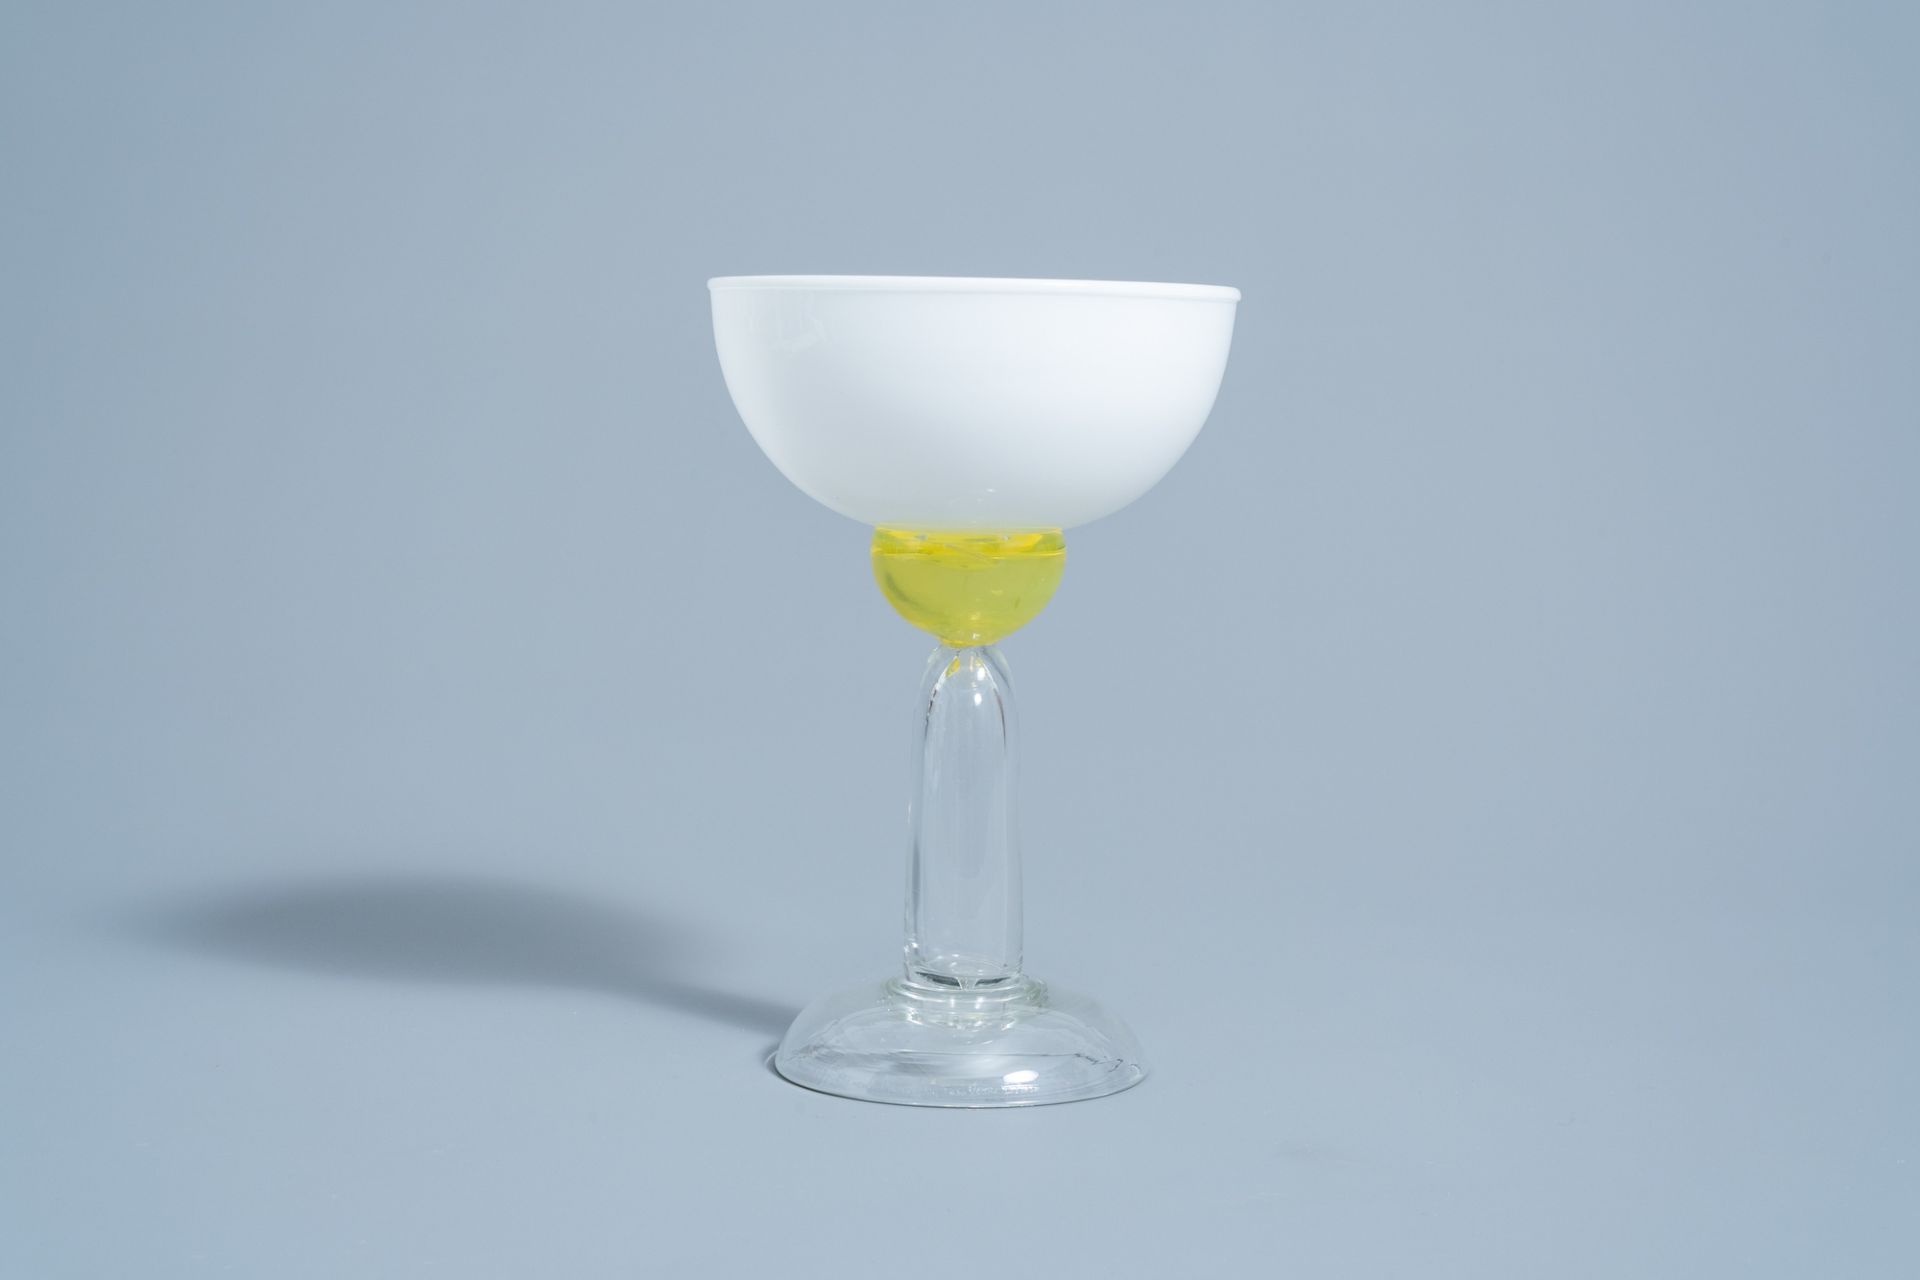 Marco Zanini (1954): 'Beltegeuse' Murano glass glass for Memphis Milano by Toso Vetri d'Arte, [1983] - Image 3 of 9